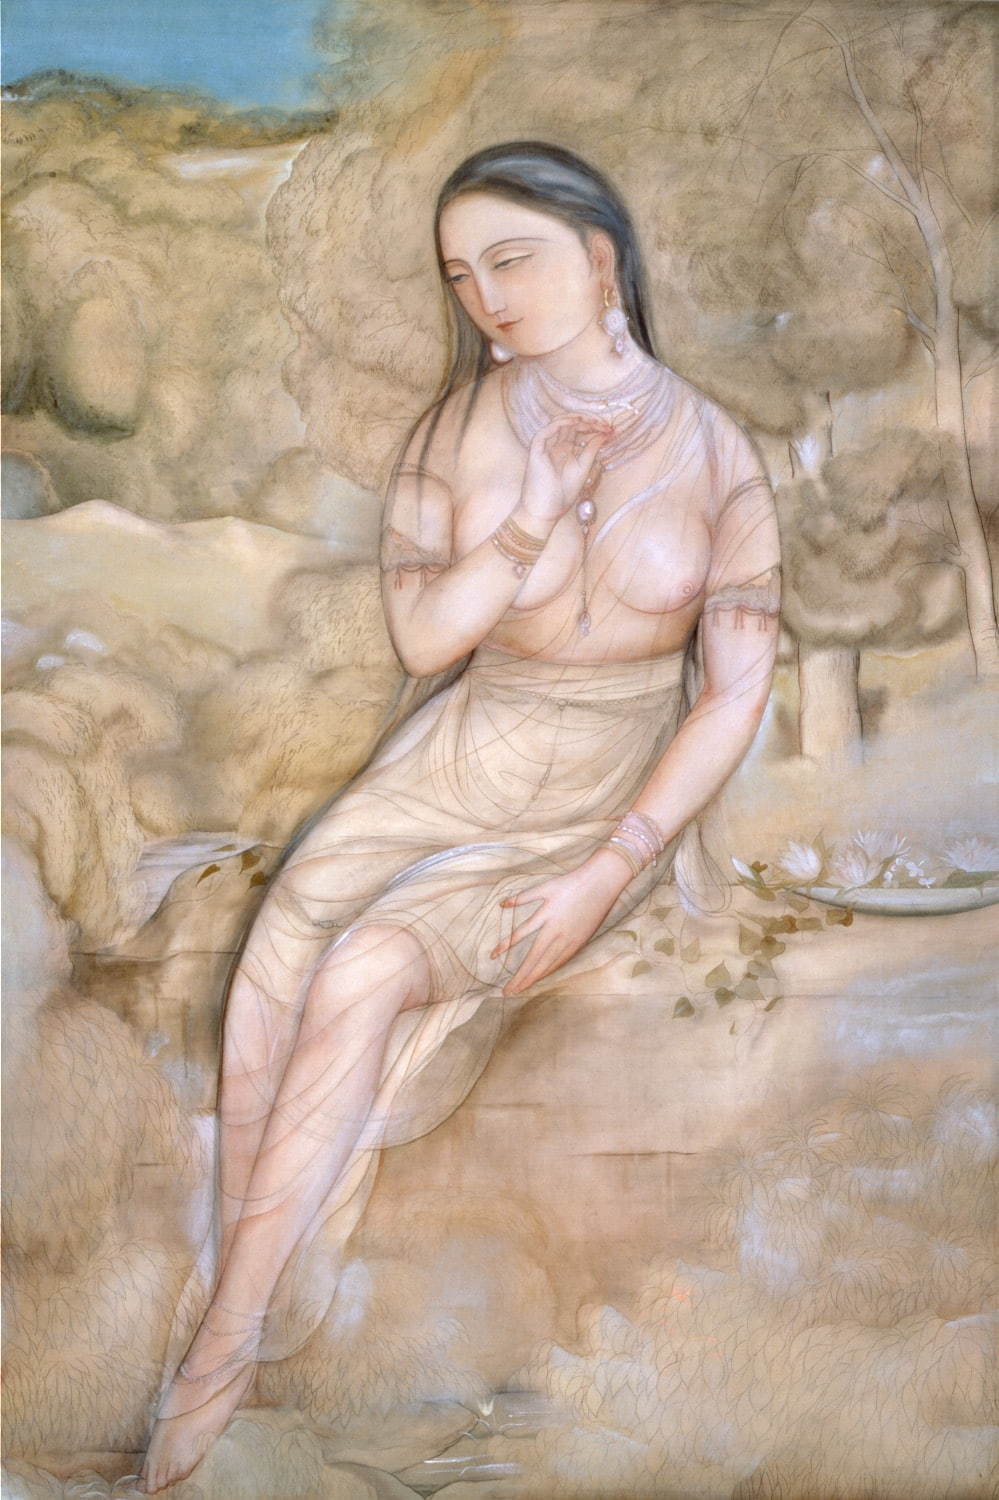 村上華岳《裸婦図》1920(大正9)年、絹本・彩色、山種美術館